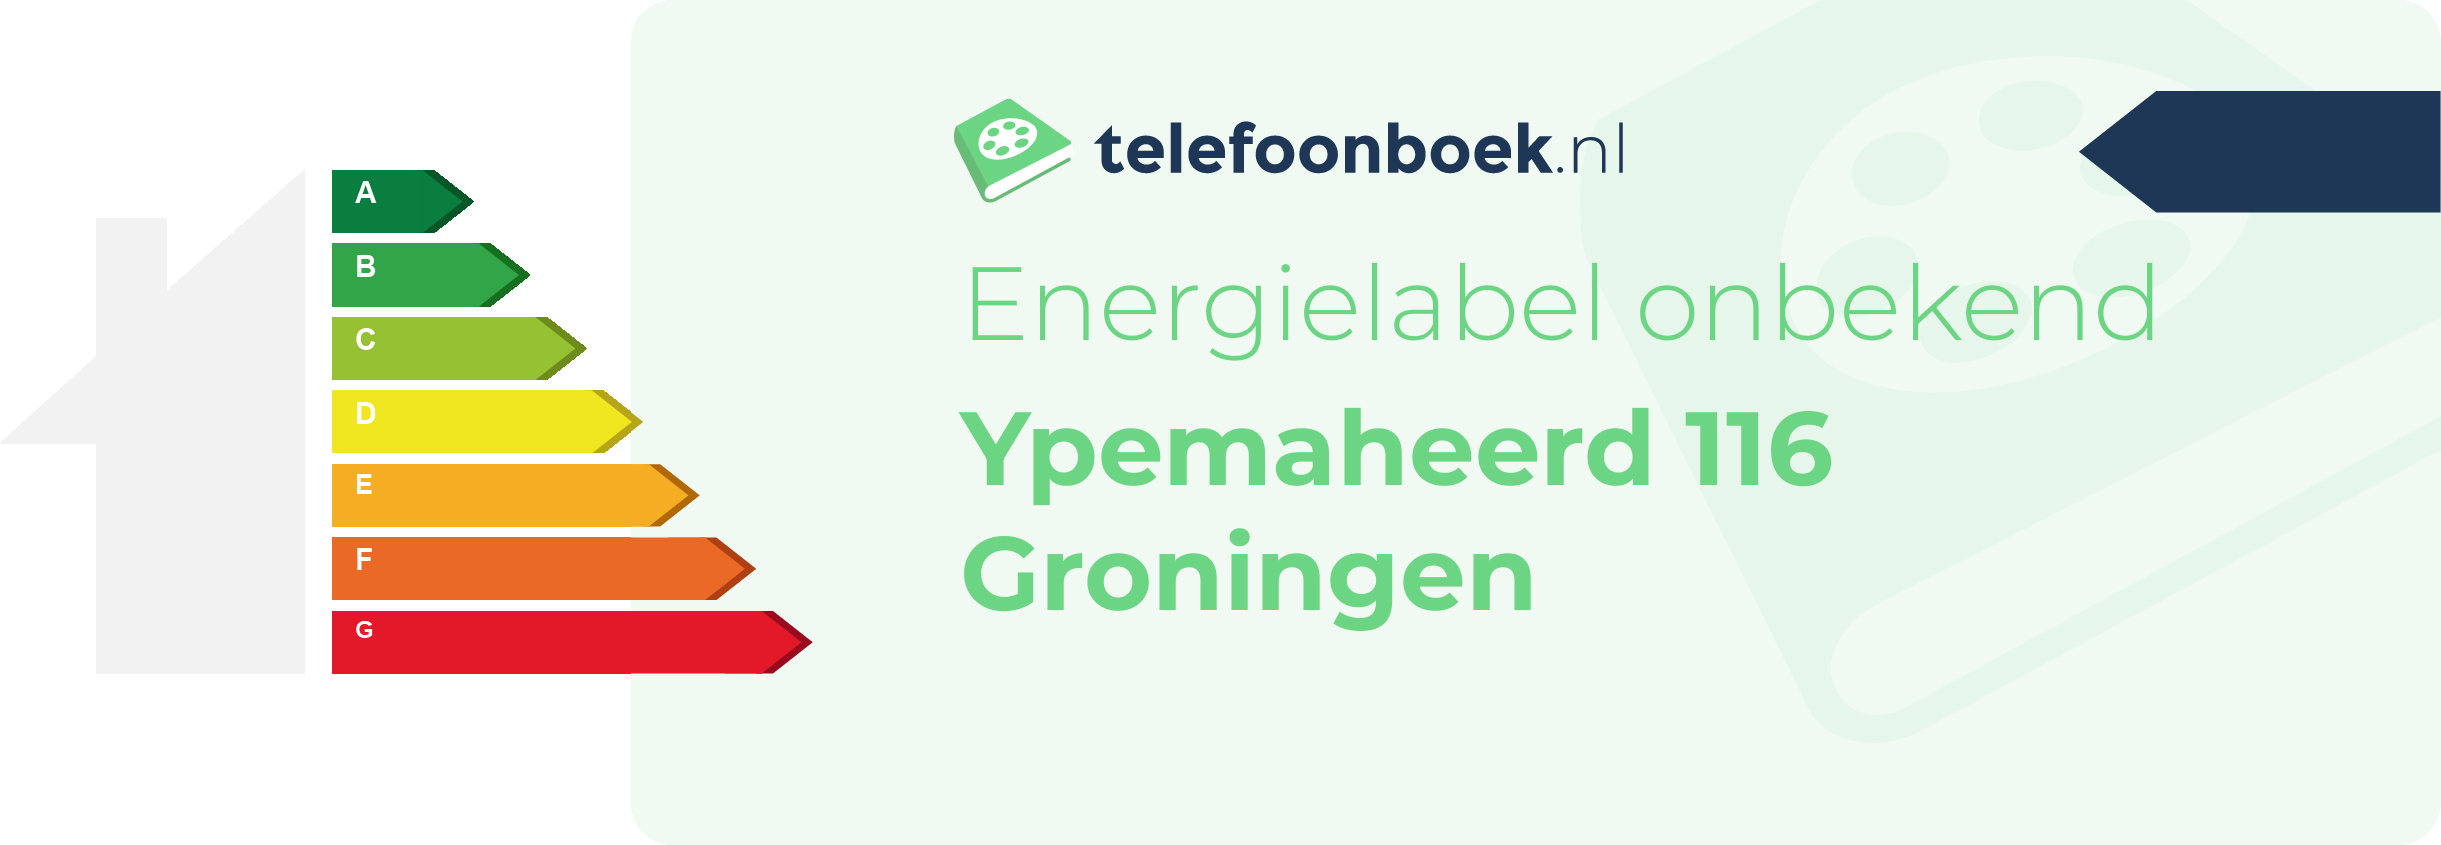 Energielabel Ypemaheerd 116 Groningen